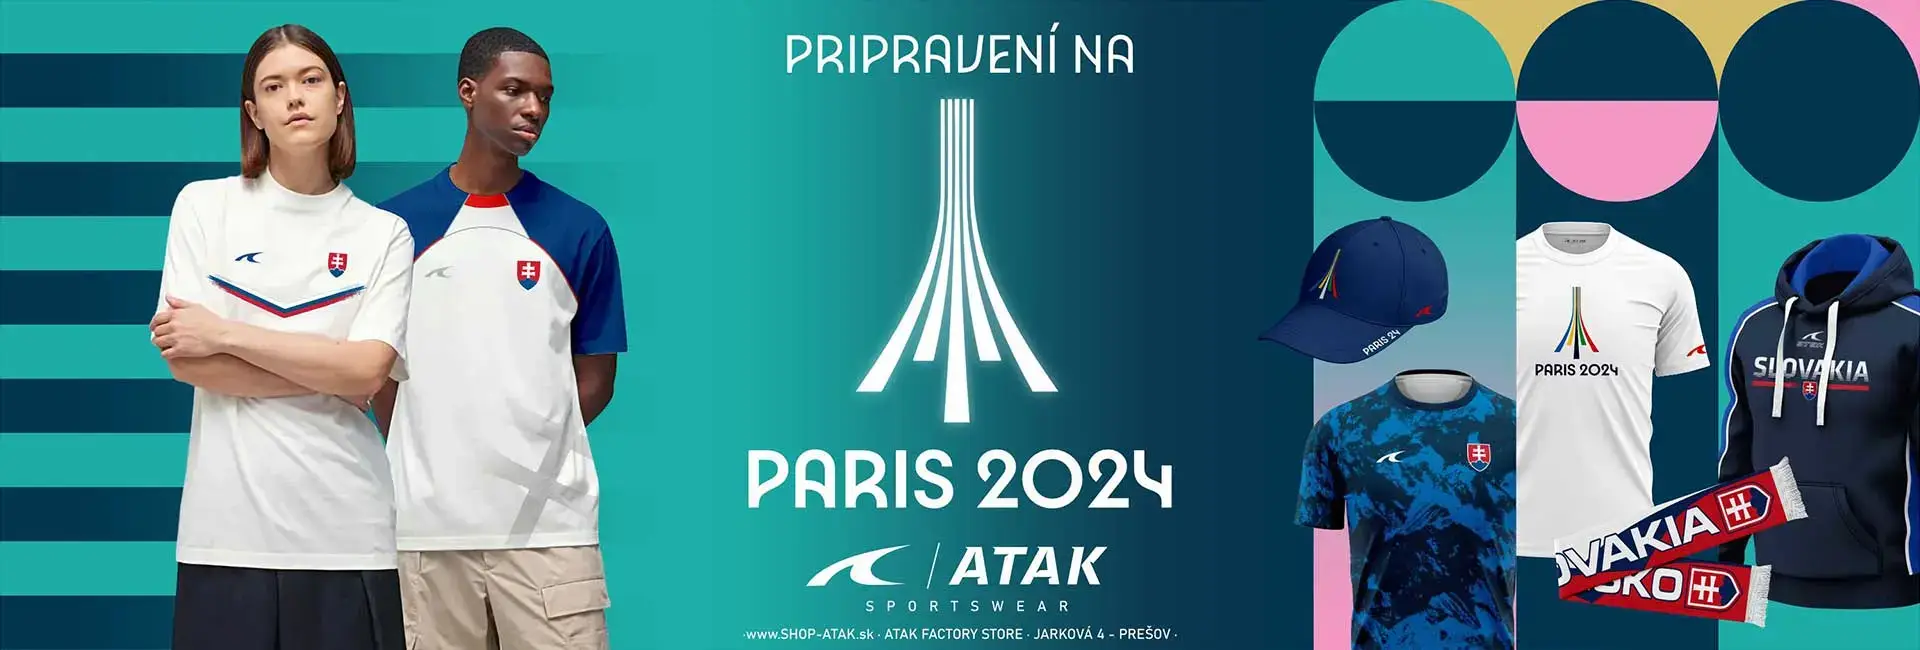 Banner olympíjskych hier v Paríži 2024